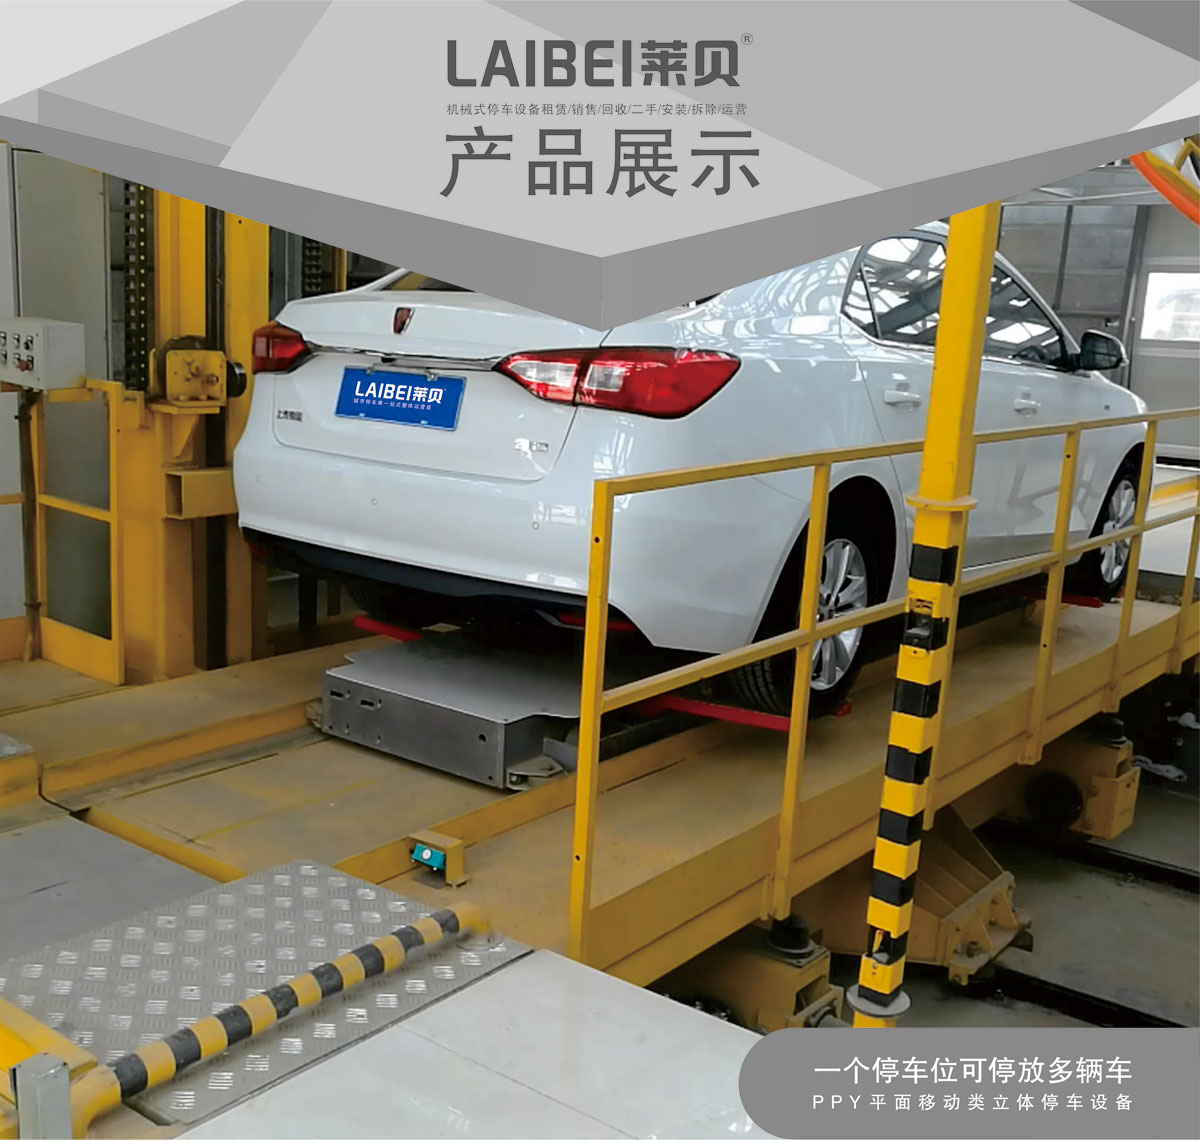 贵阳莱贝PPY平面移动机械式立体停车库产品展示.jpg